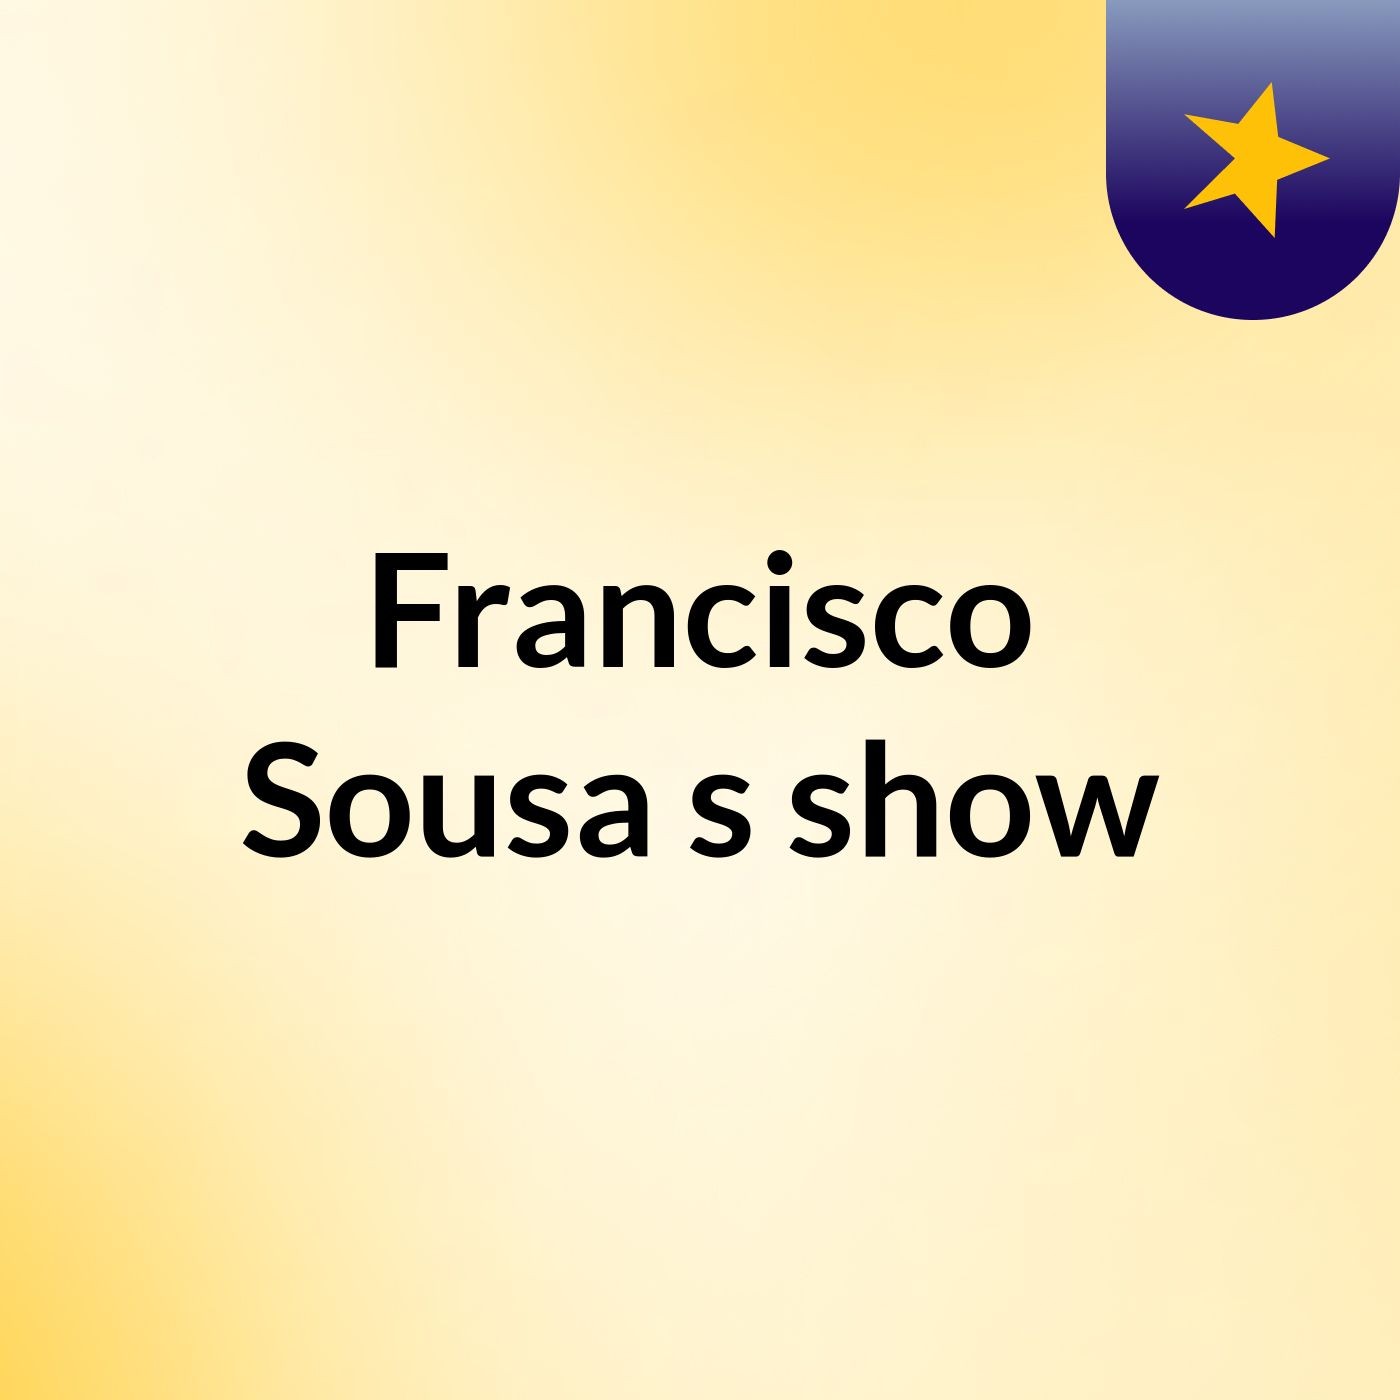 Francisco Sousa's show